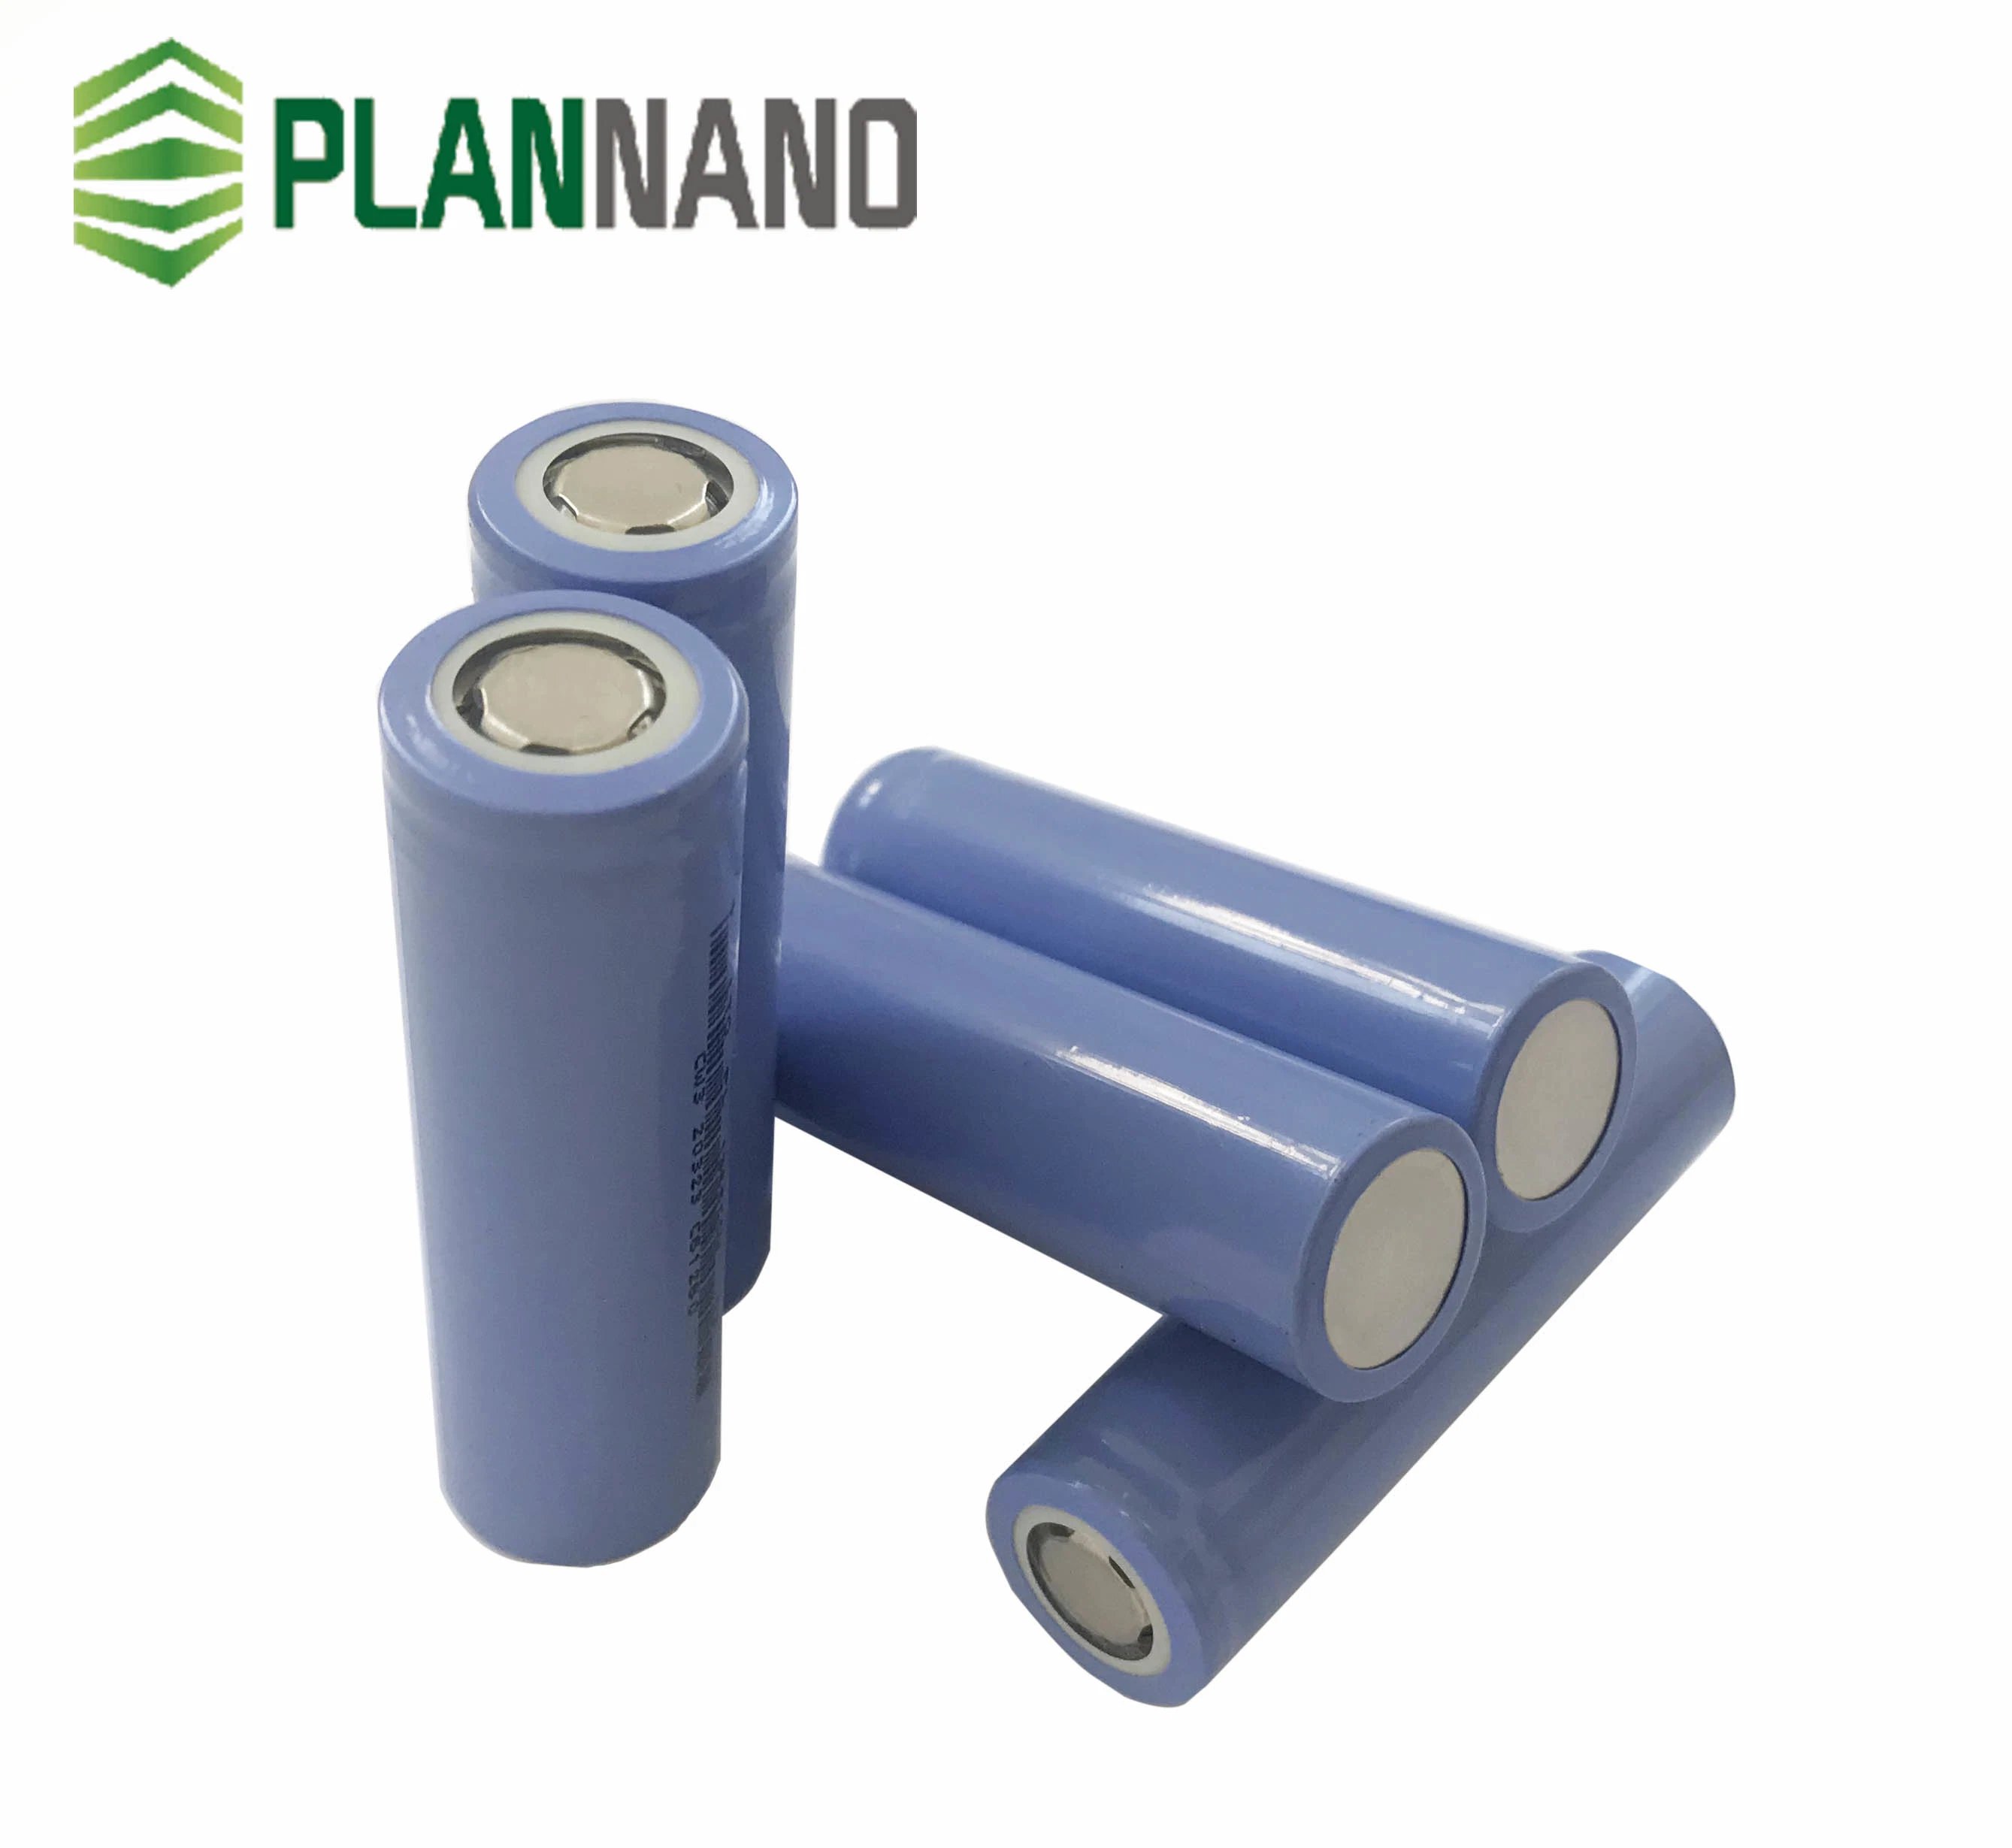 CE сертифицирована Plannano литий титаната свинца аккумулятор 3,6 В 3300Мач 3c размера 18650 Lto ячейки для скутера с электроприводом или солнечная энергия питания